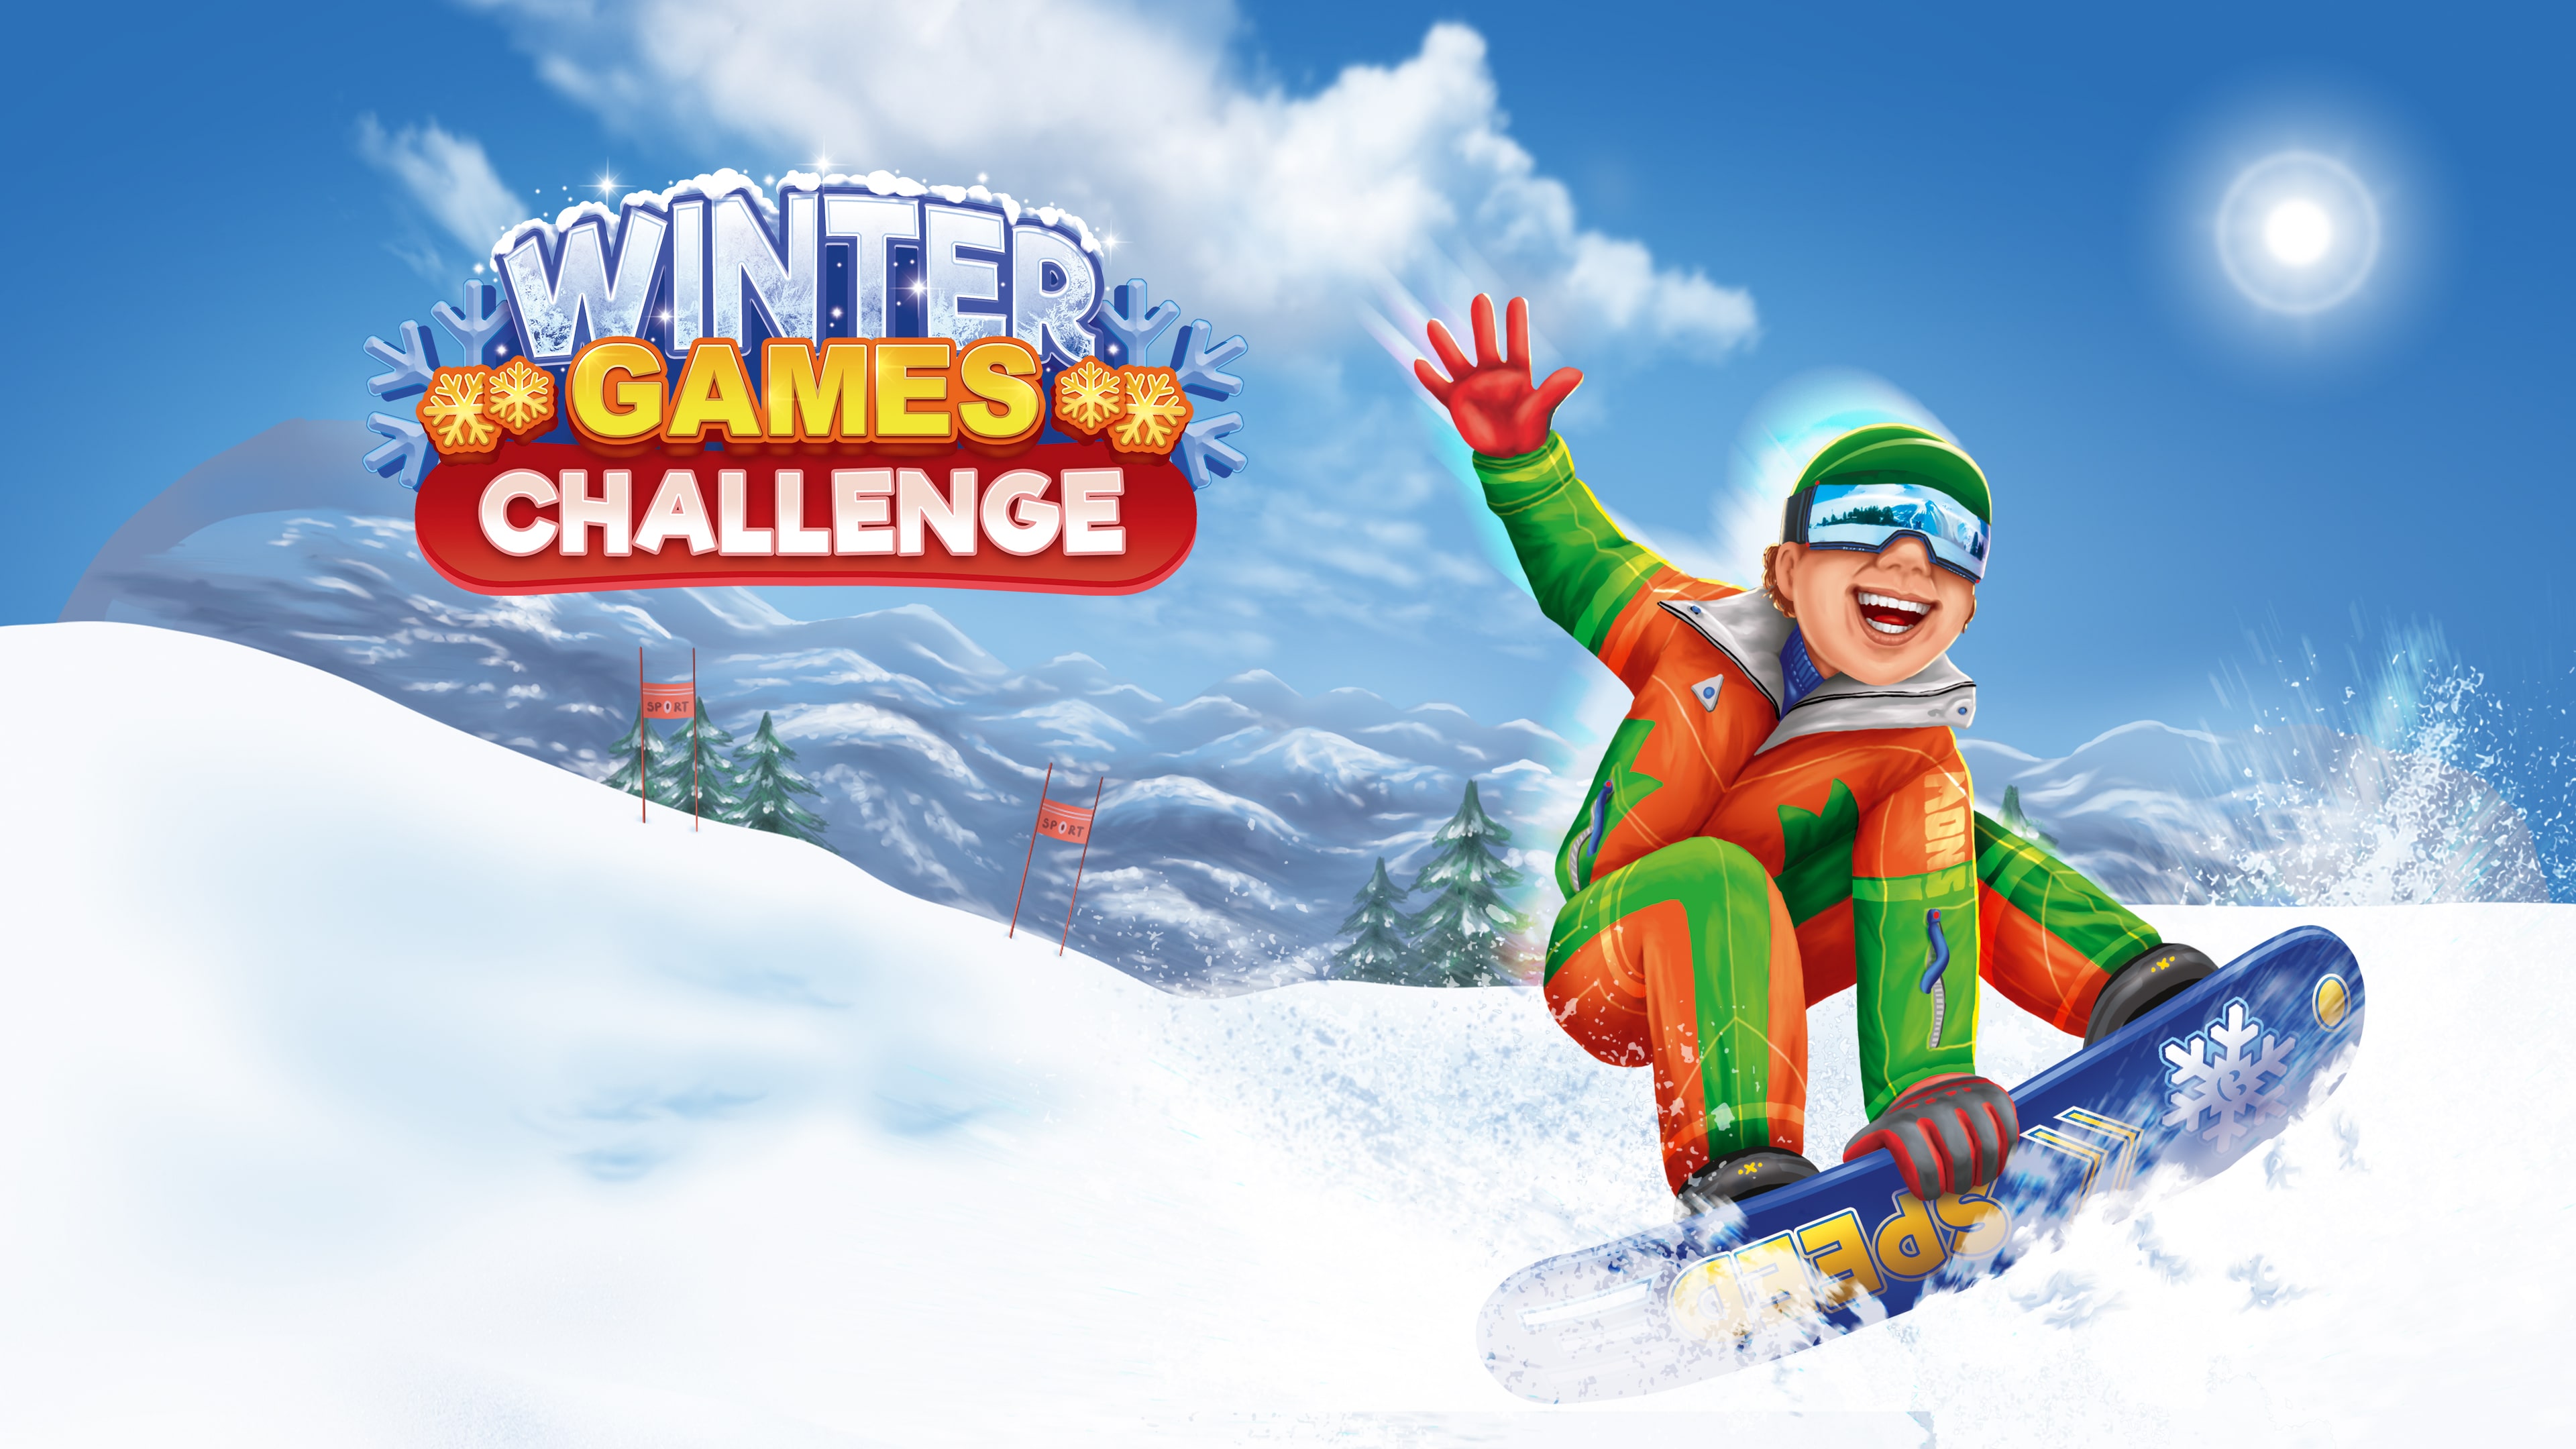 Winters Games Challenge